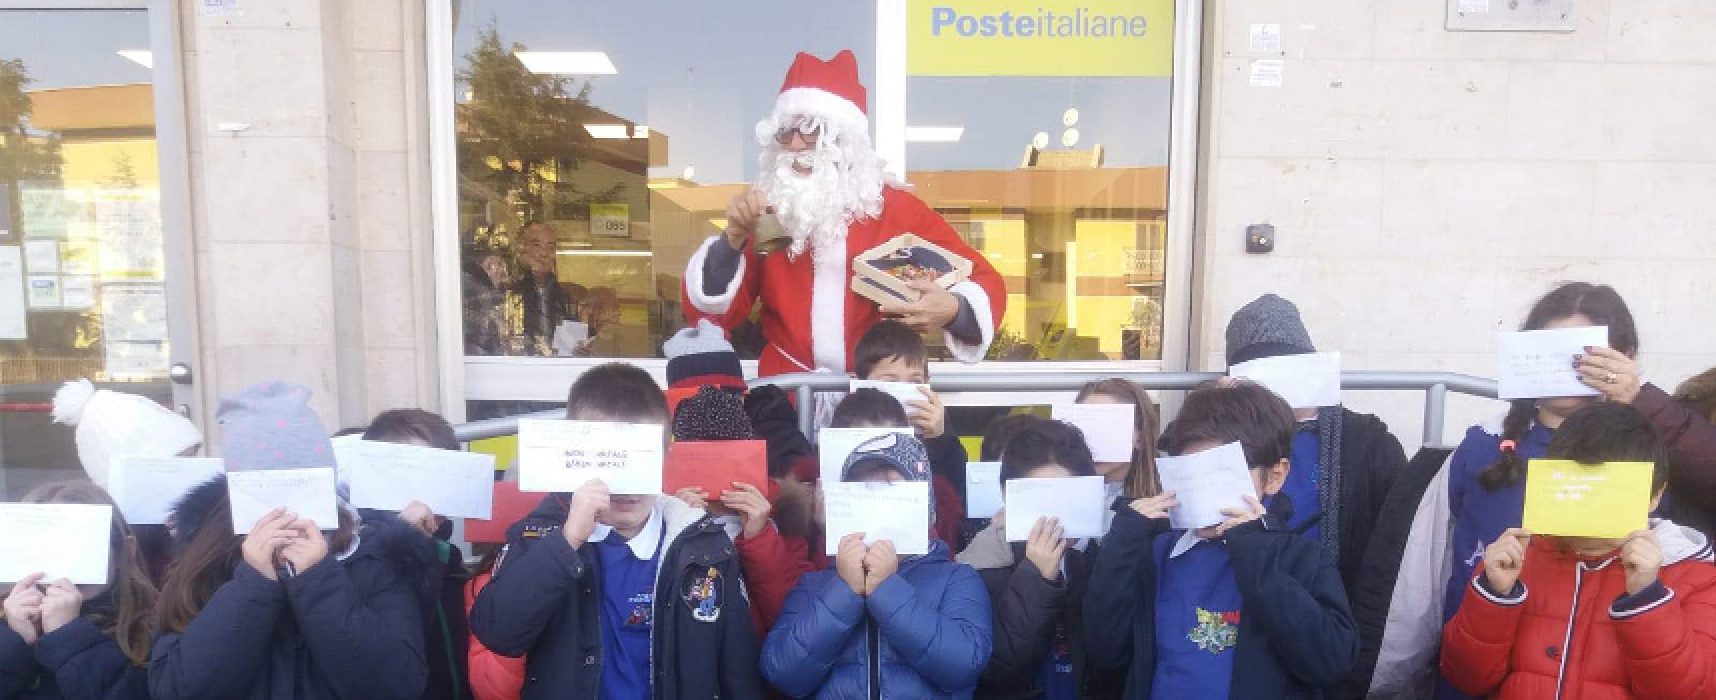 Lettere a Babbo Natale, i bambini della “Cosmai” in coda all’ufficio postale per la spedizione